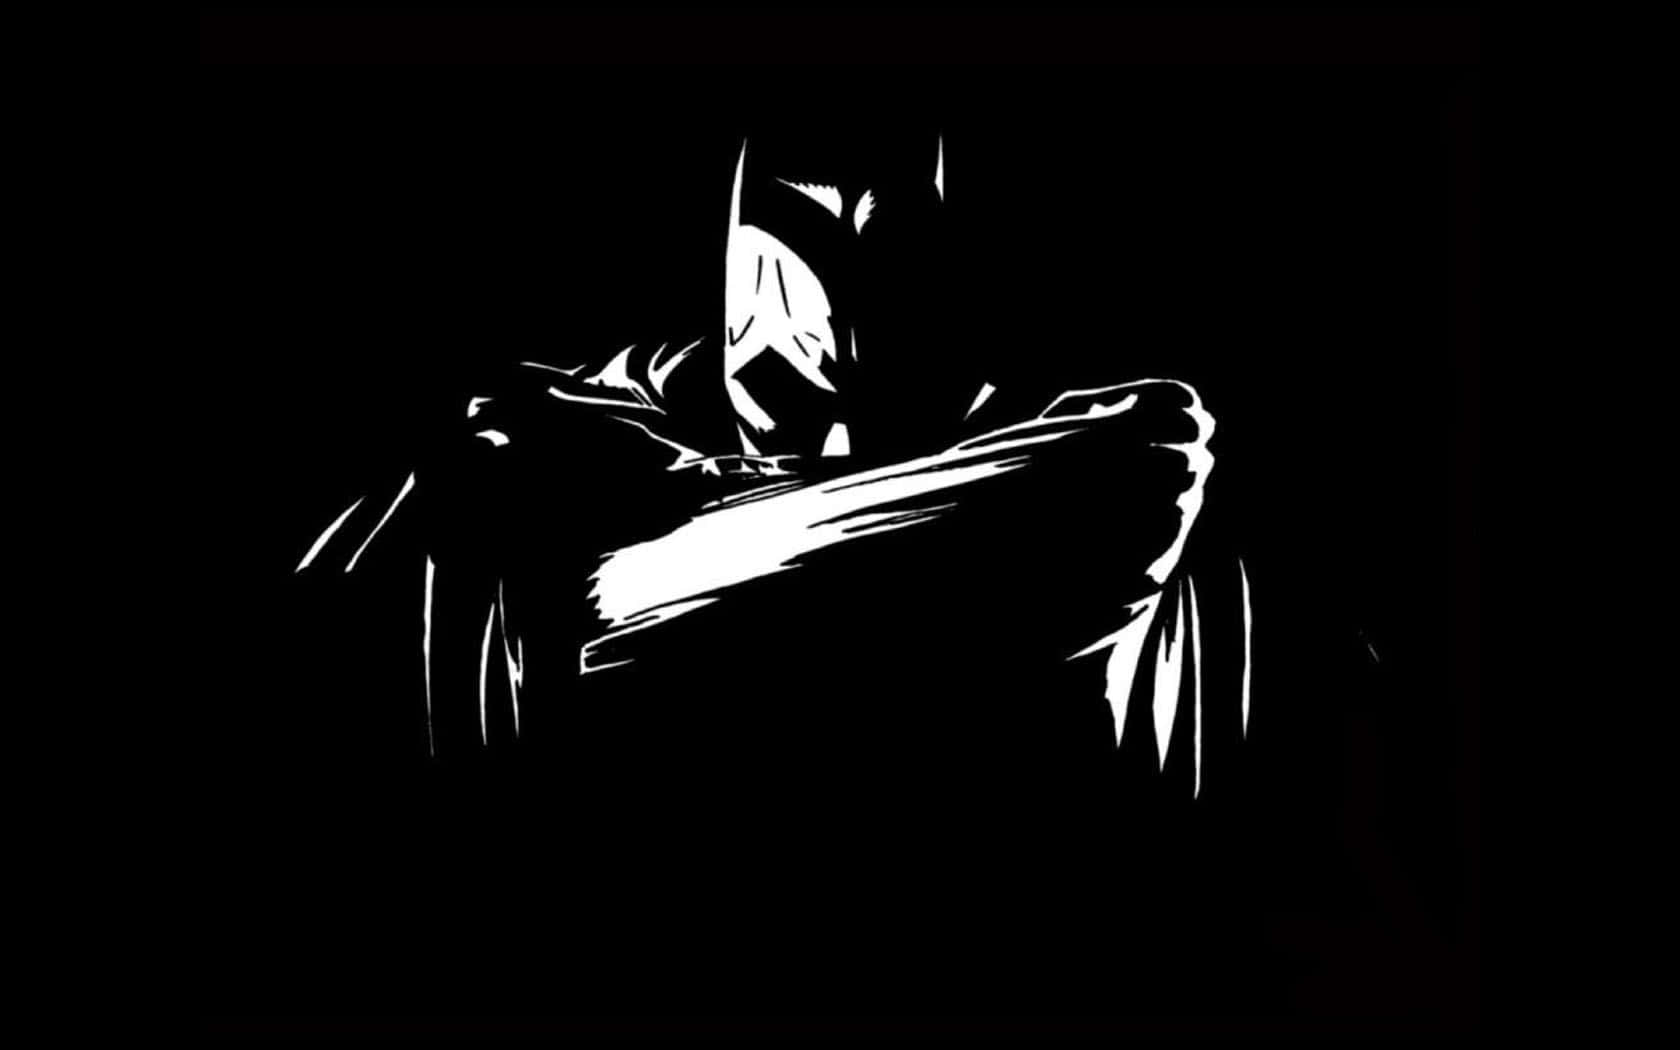 Caption: The Dark Knight in Monochrome Wallpaper